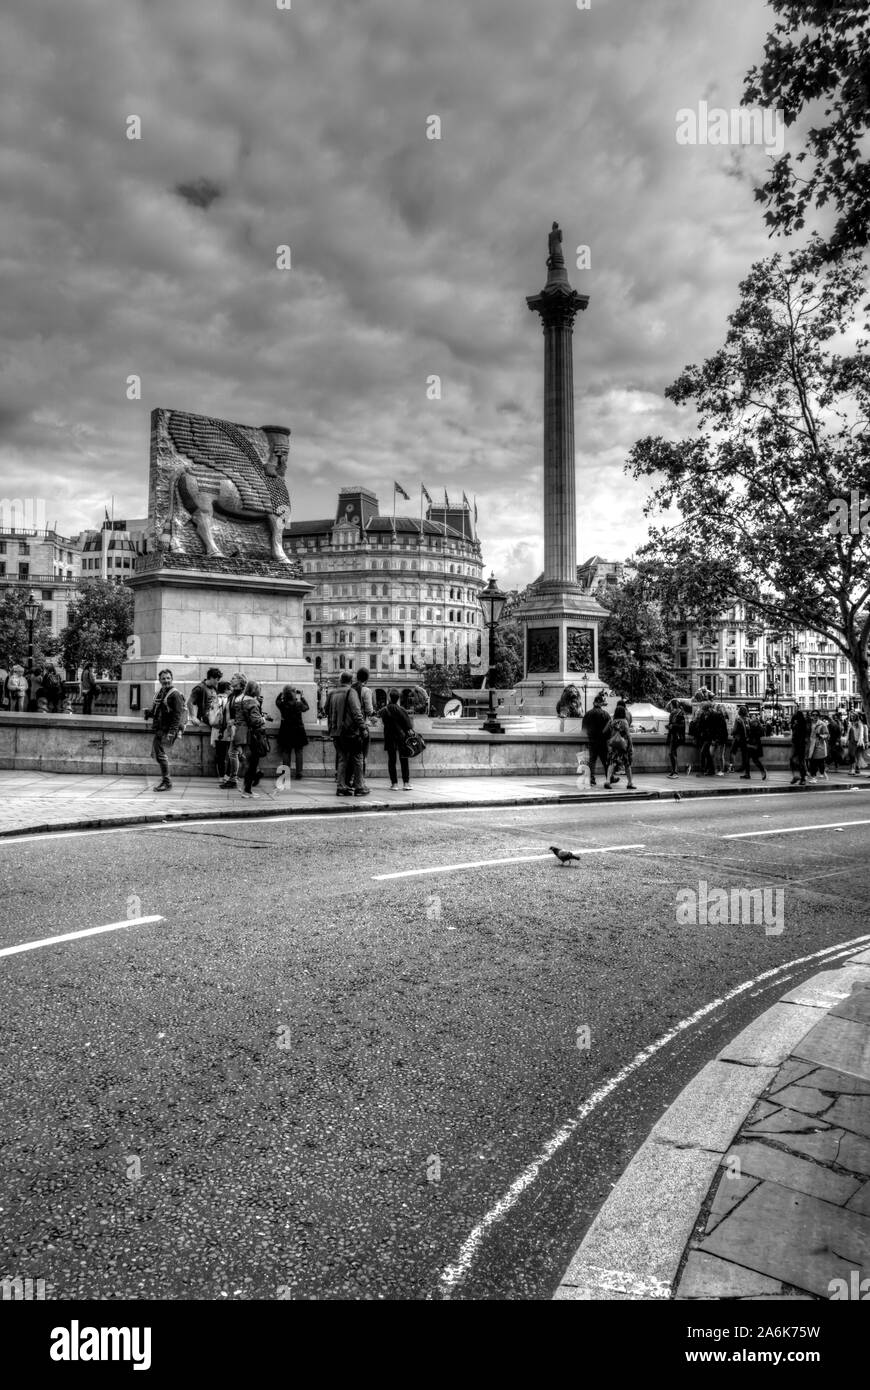 Londres, Royaume-Uni, le 7 septembre 2019 : de nombreux touristes marcher quelque motion blurred dans Trafalgar Square avec la Colonne Nelson et fou Banque D'Images